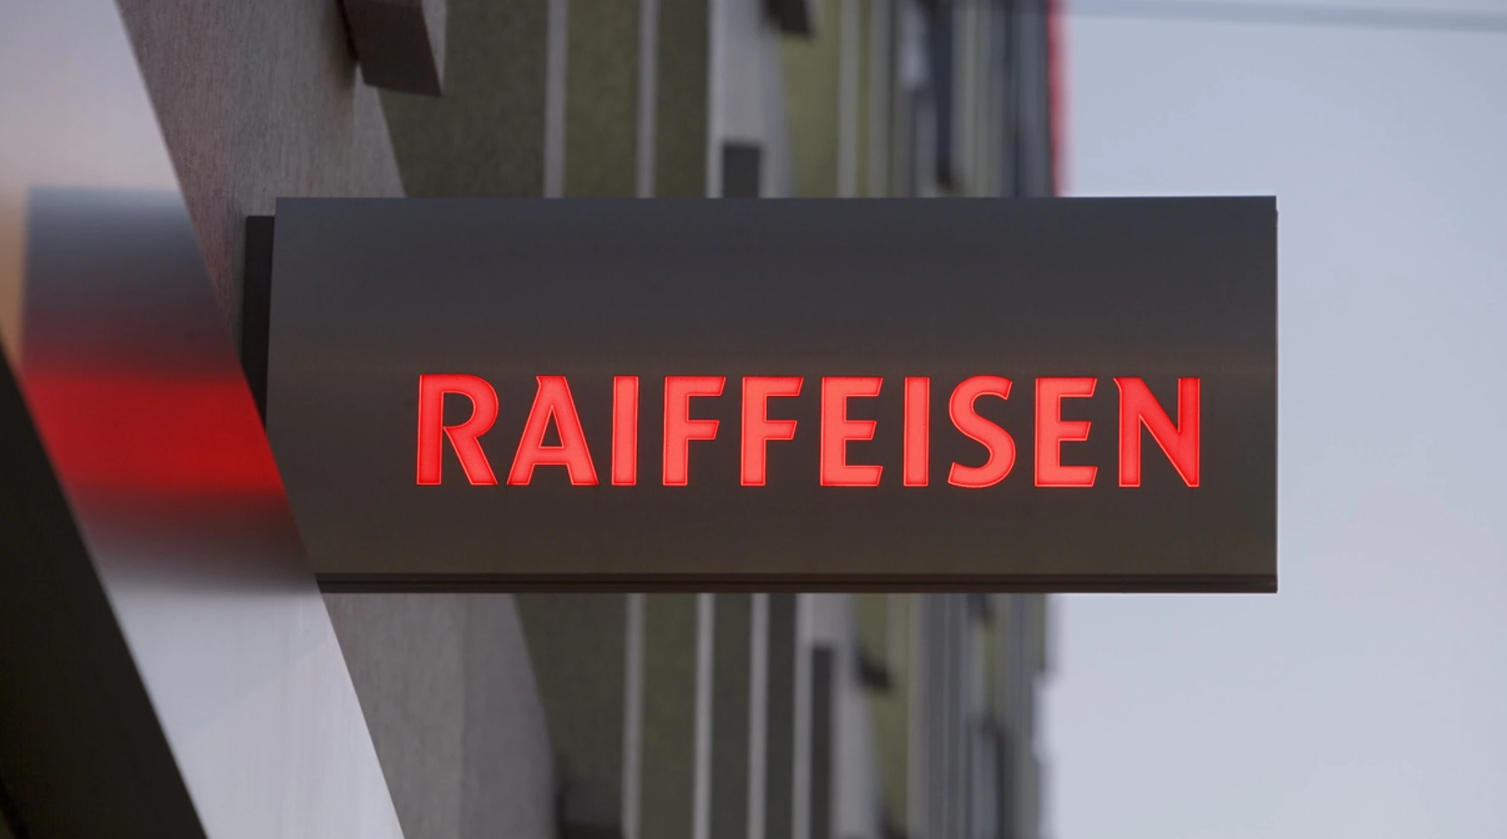 Raiffeisen банк Швейцарии. Swiss Raiffeisen Group. Raiffeisen Швейцария банк логотип. Raiffeisen Bank закрыл корсчета всем банкам из России, кроме своей "Дочки".